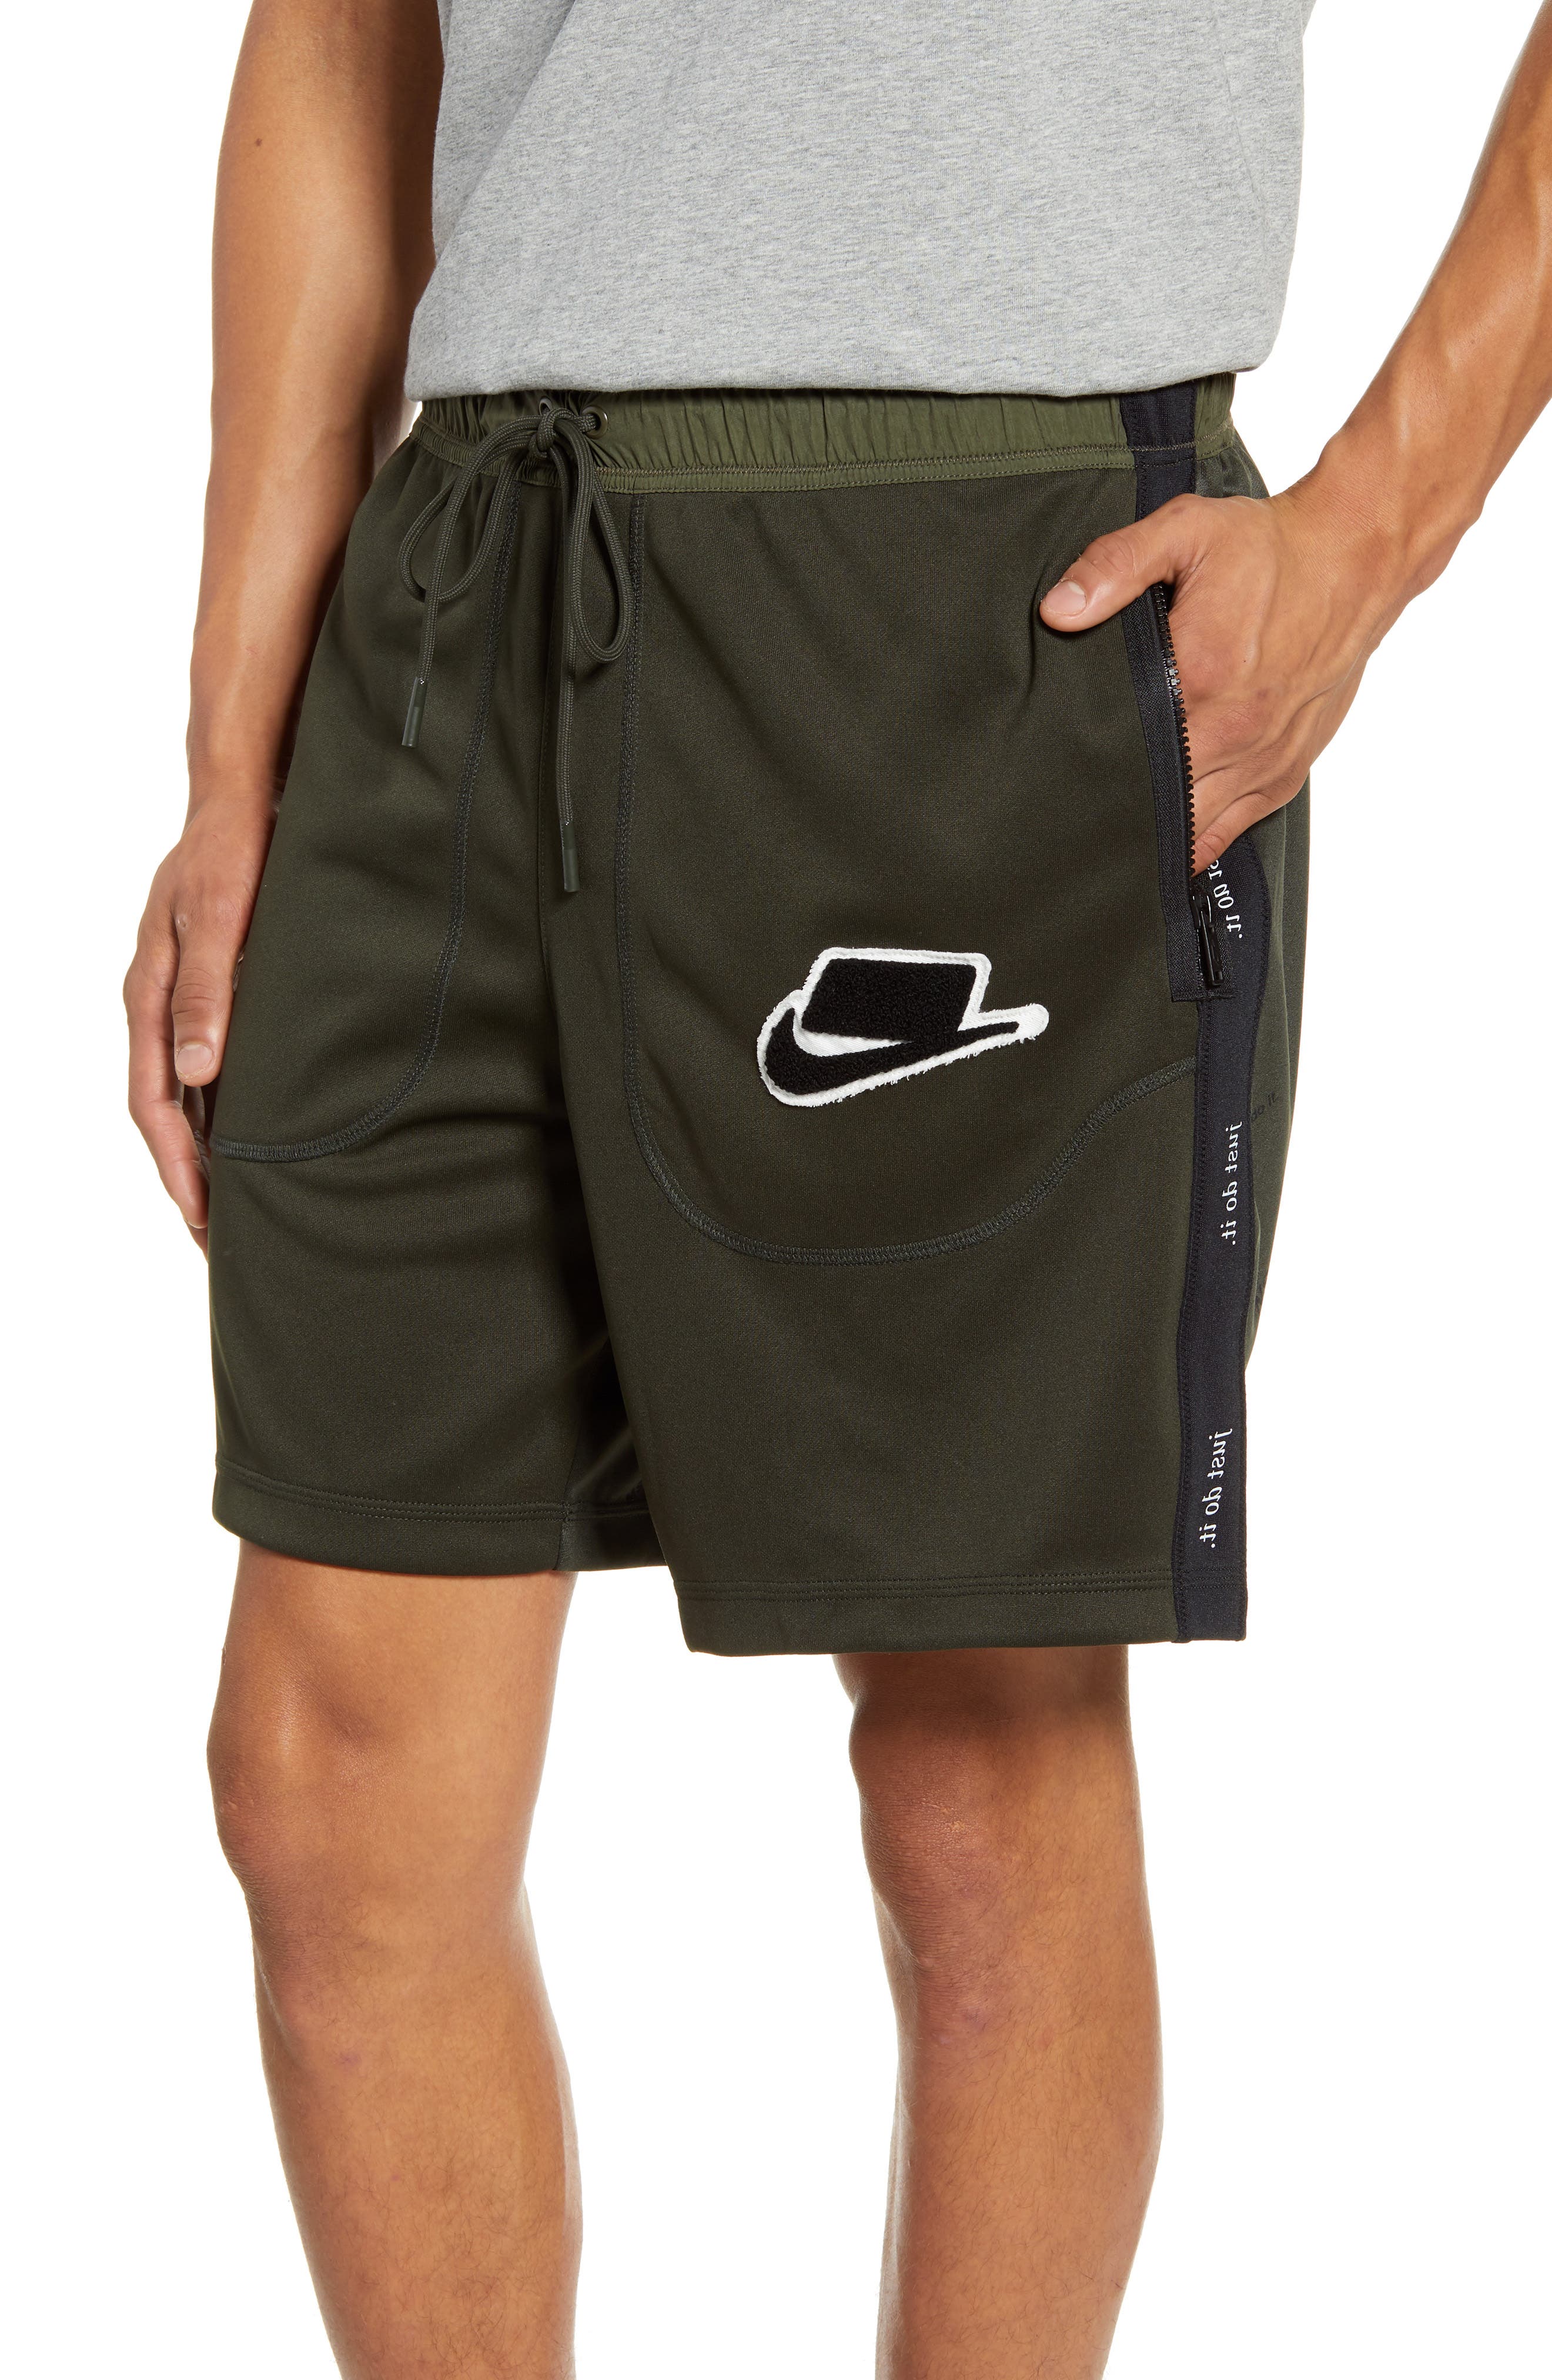 nike shorts with zipper pocket on back